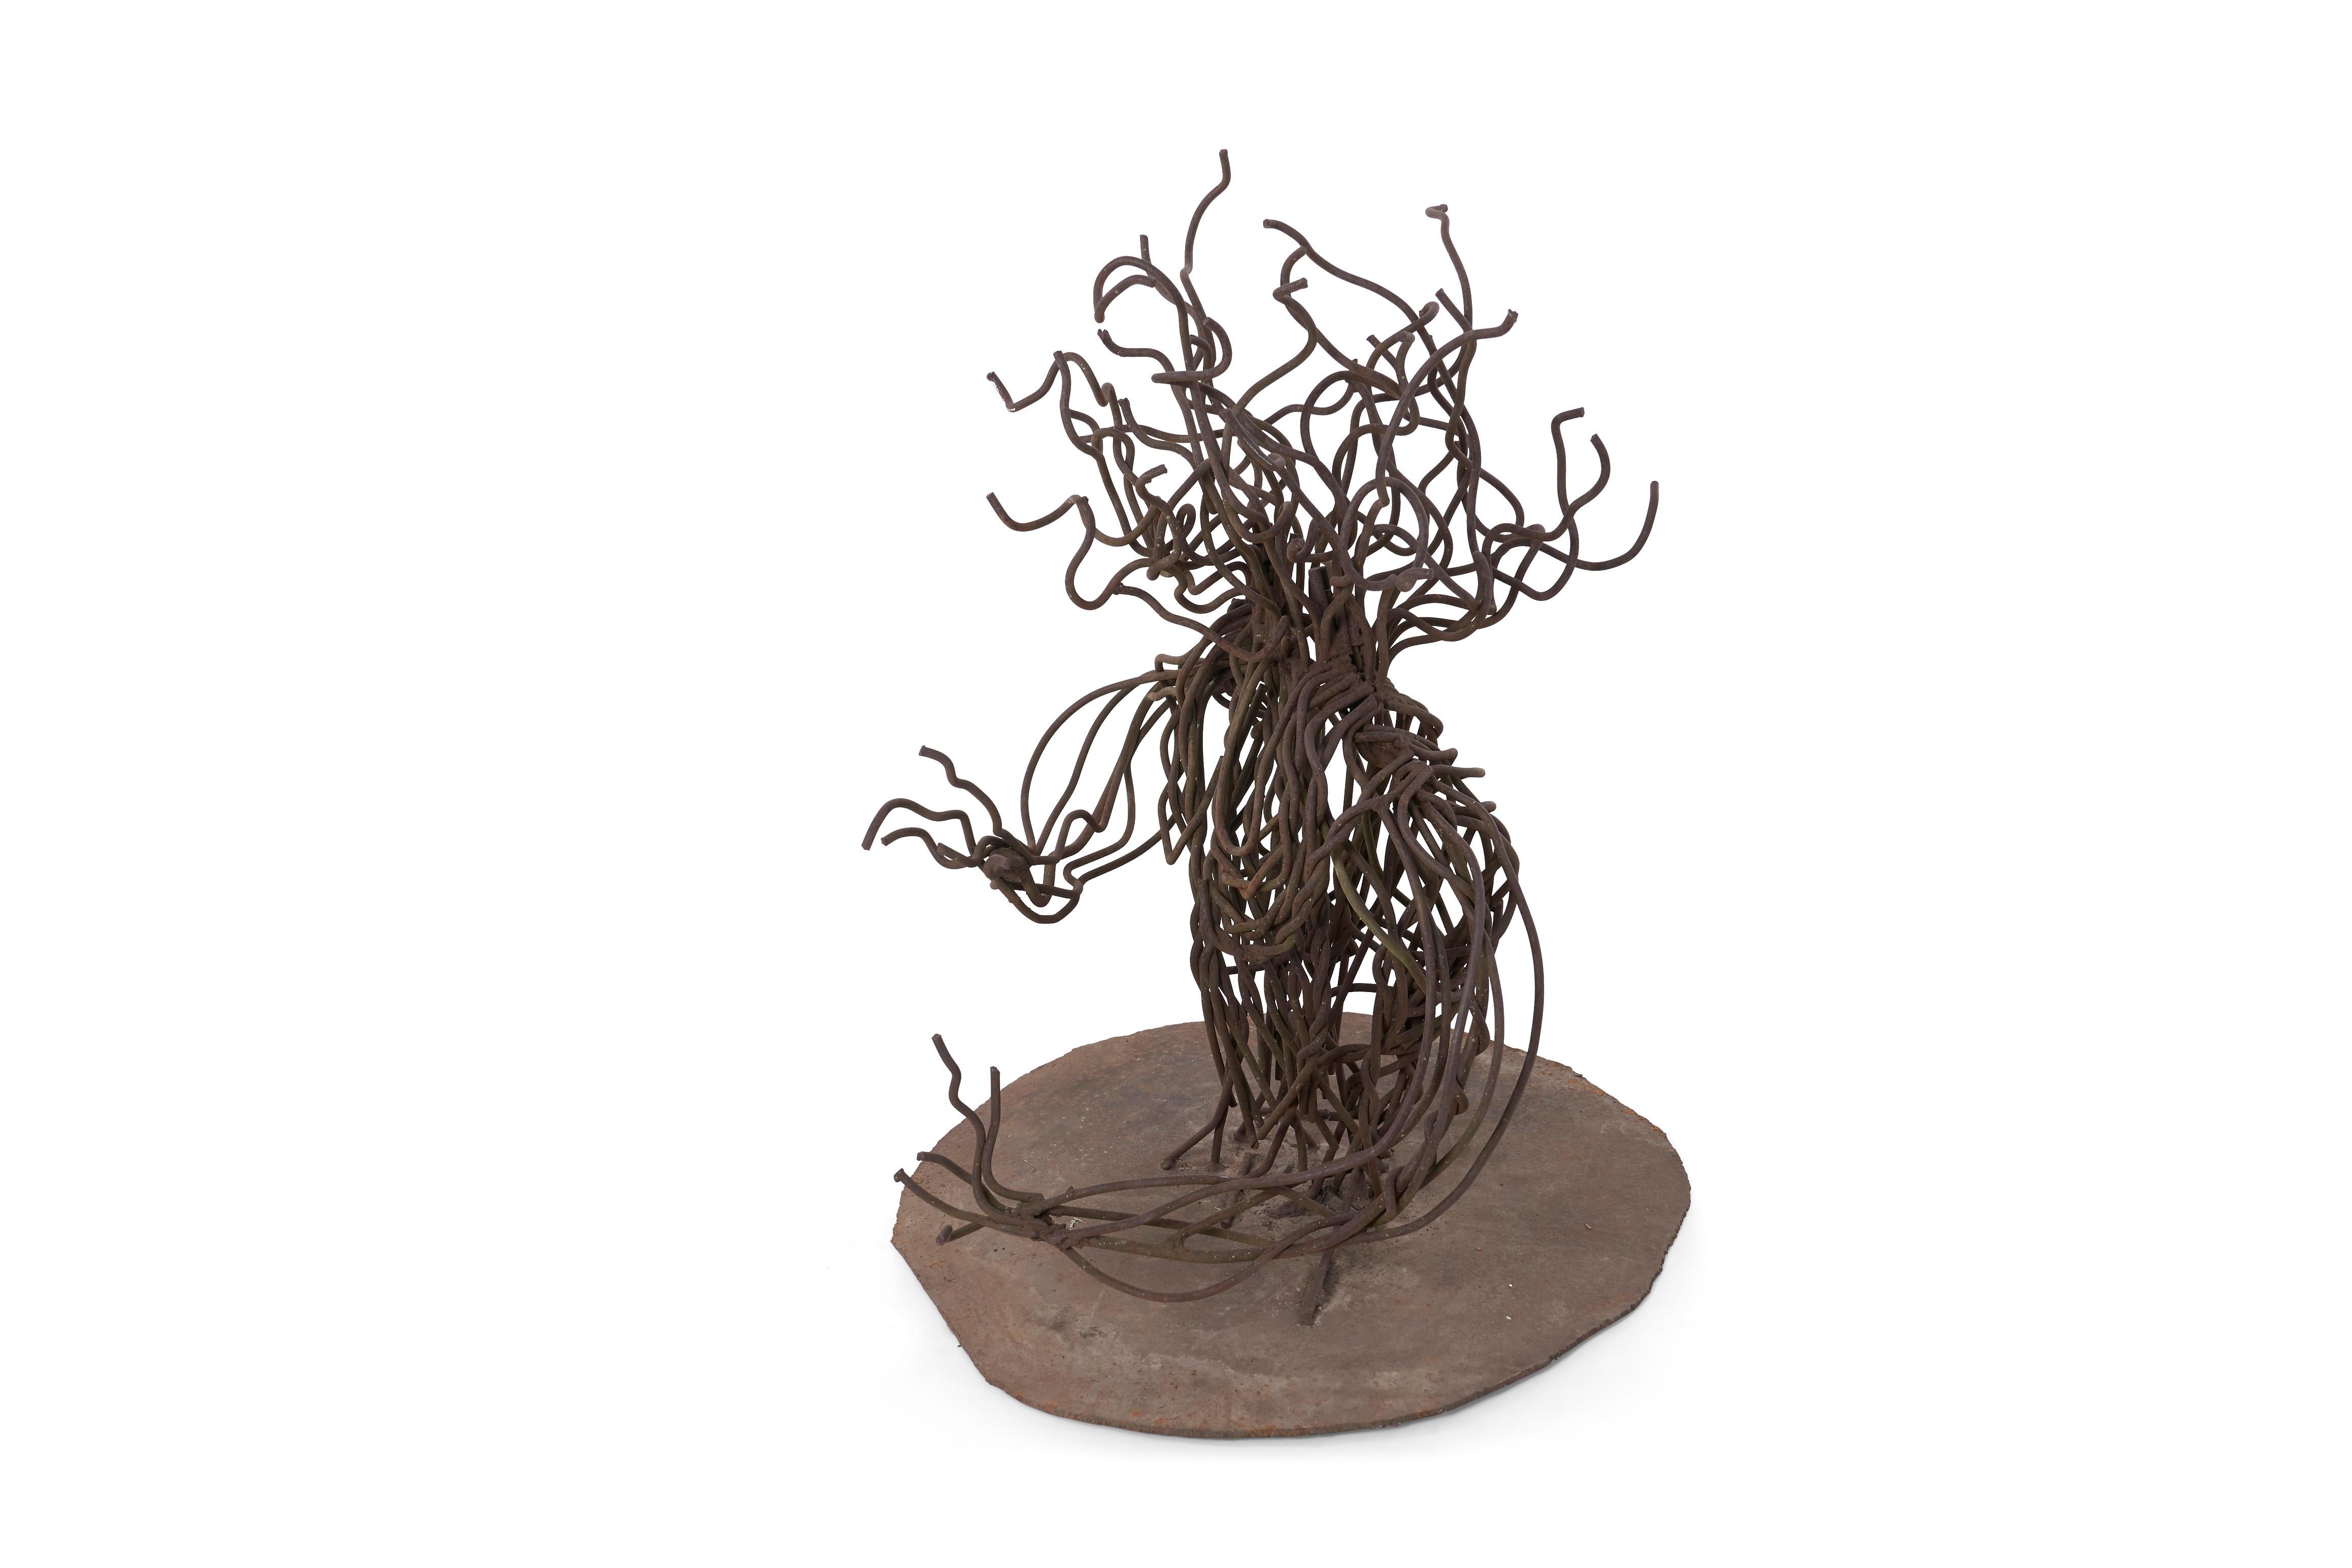 Richard Walsh Freiform-Skulptur. Gebogenes und geschweißtes Metallrohr auf einem brenngeschnittenen runden Sockel, brutalistisch in Form und Patina. Robuste, stabile Skulptur,
um 1975.